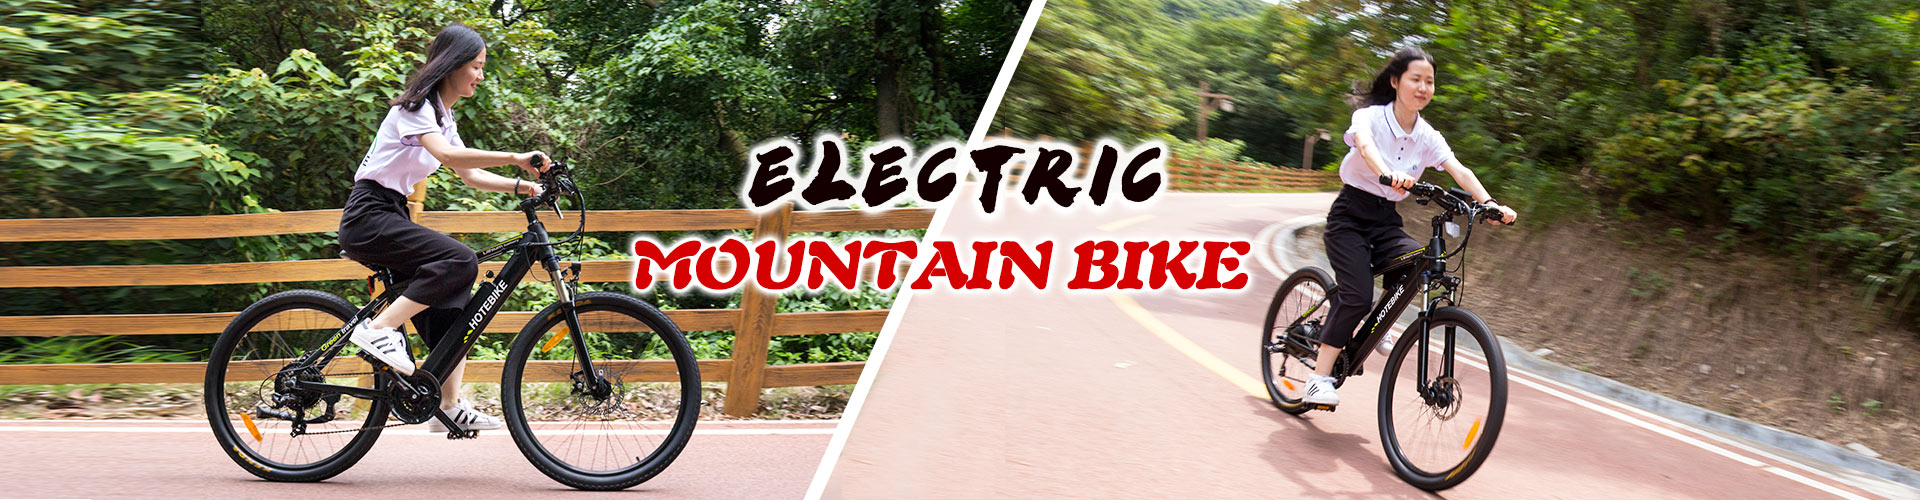 elektrisk mountainbike